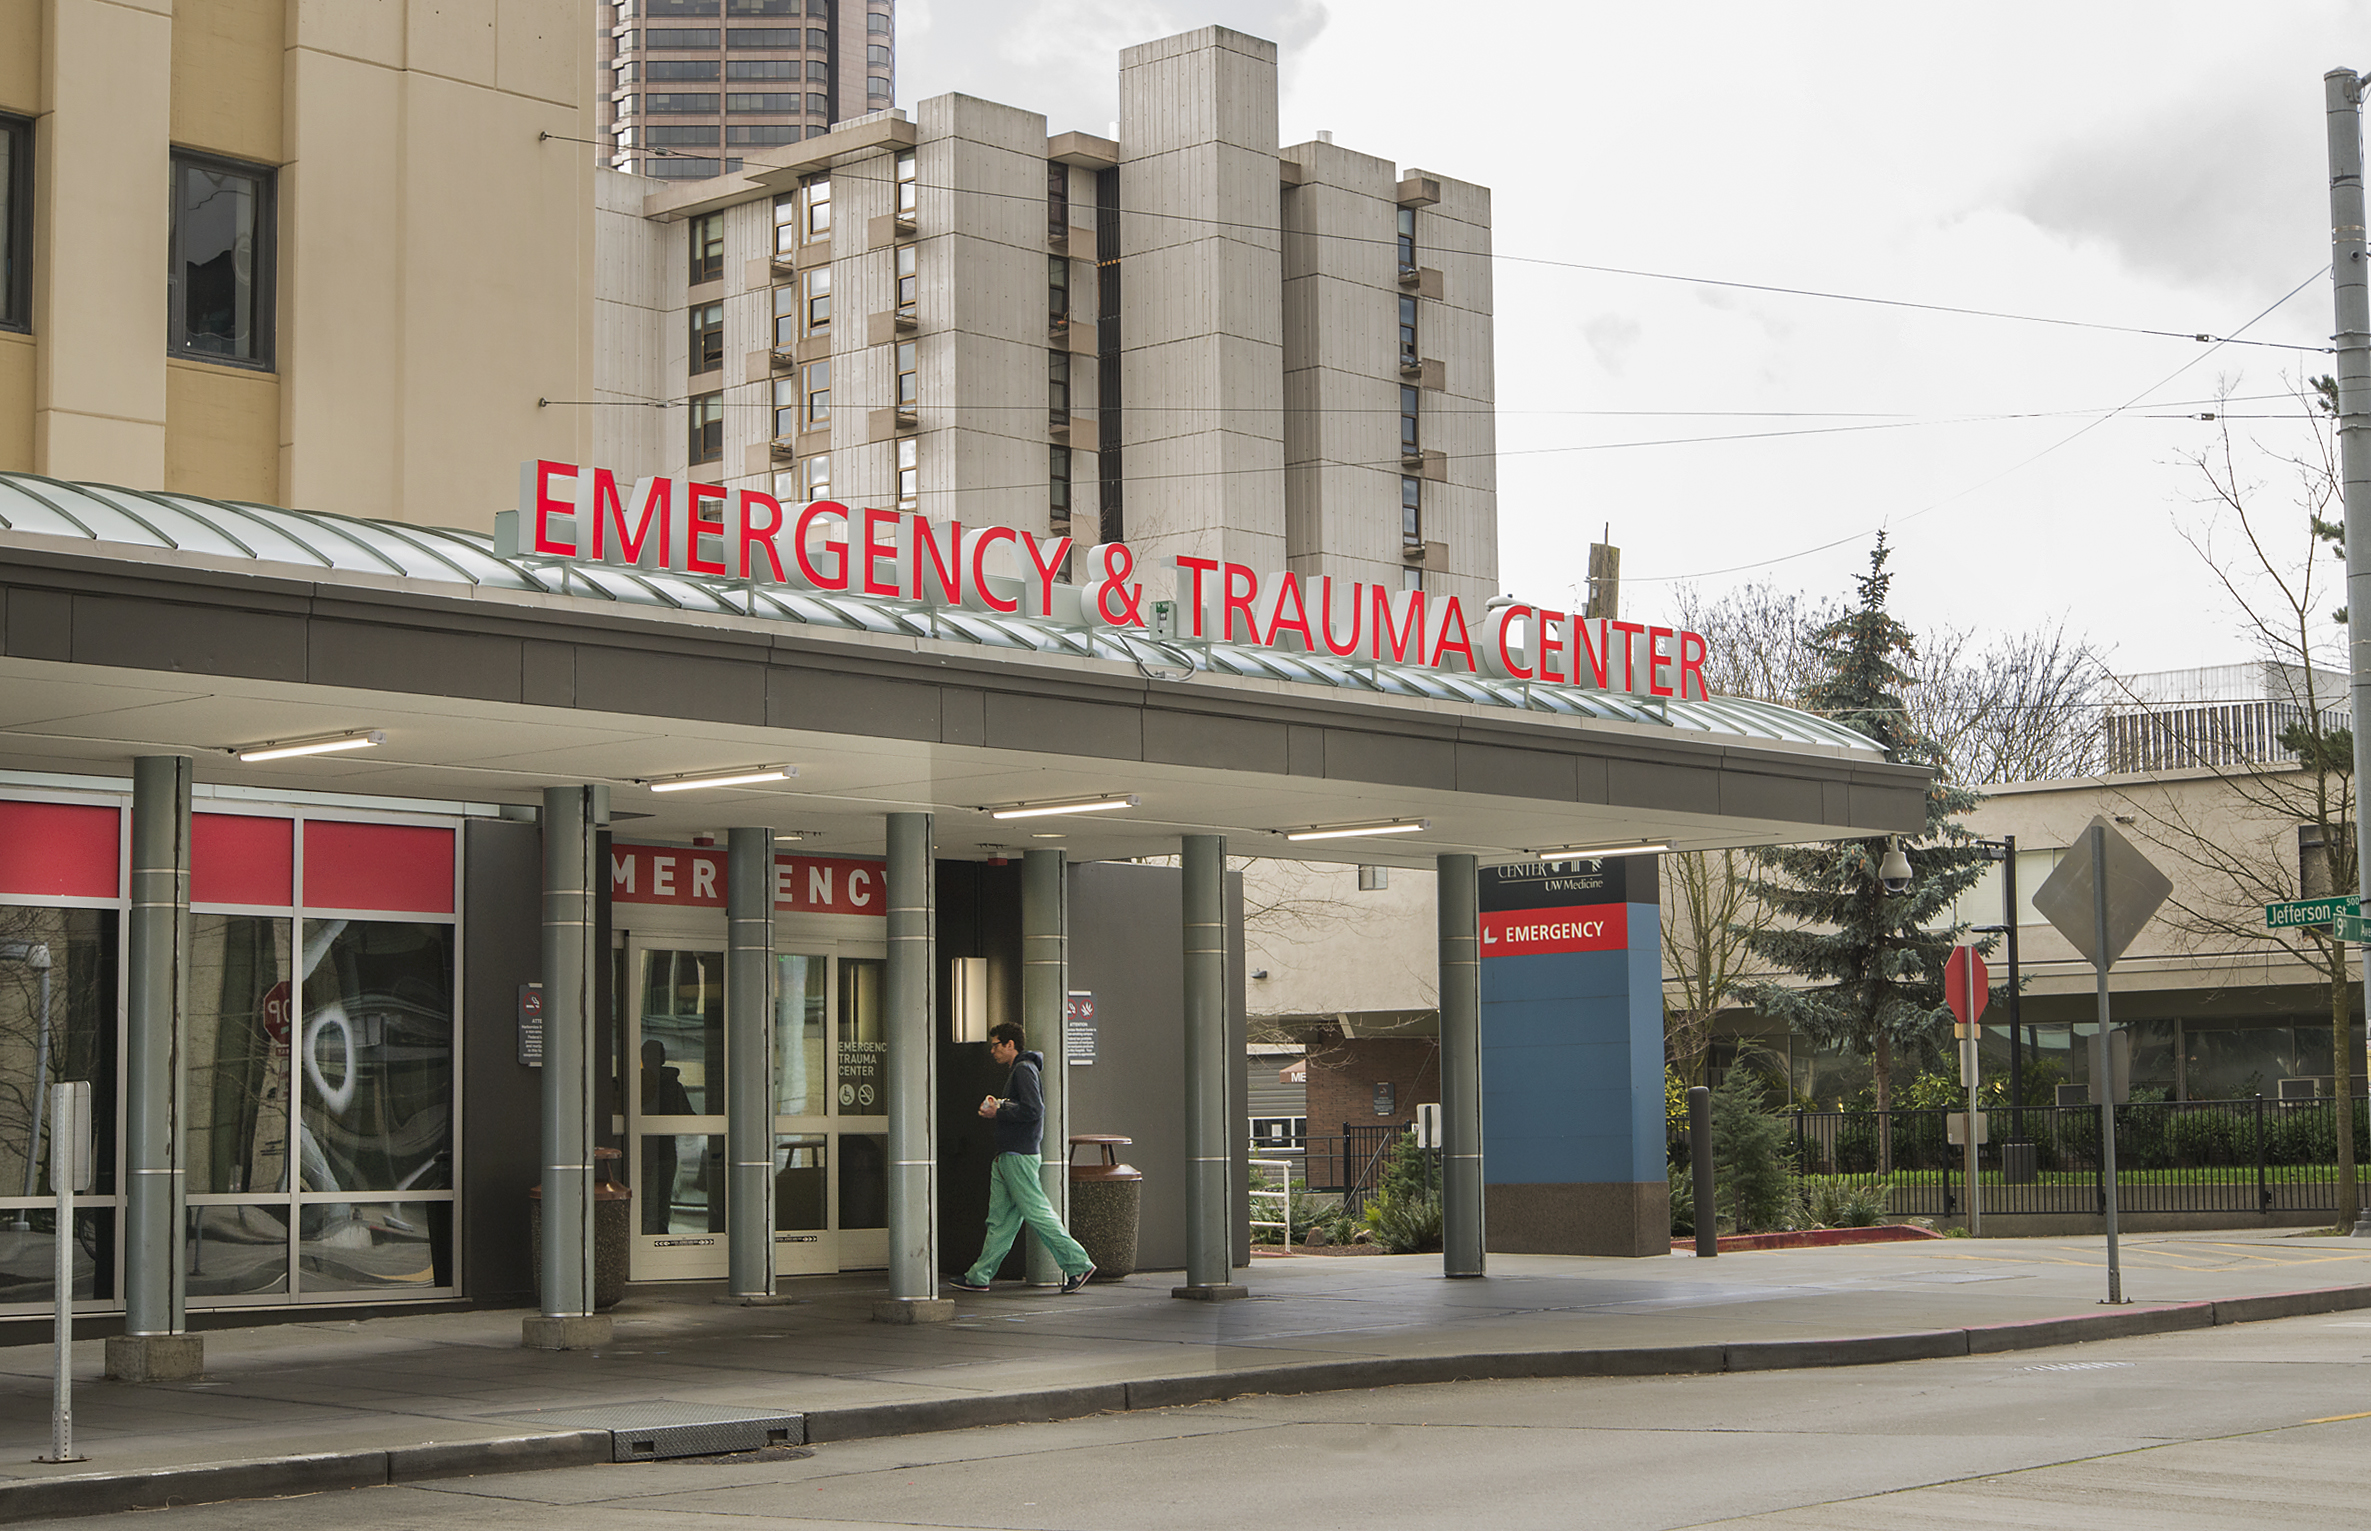 Harborview stroke center | Emergency department sign